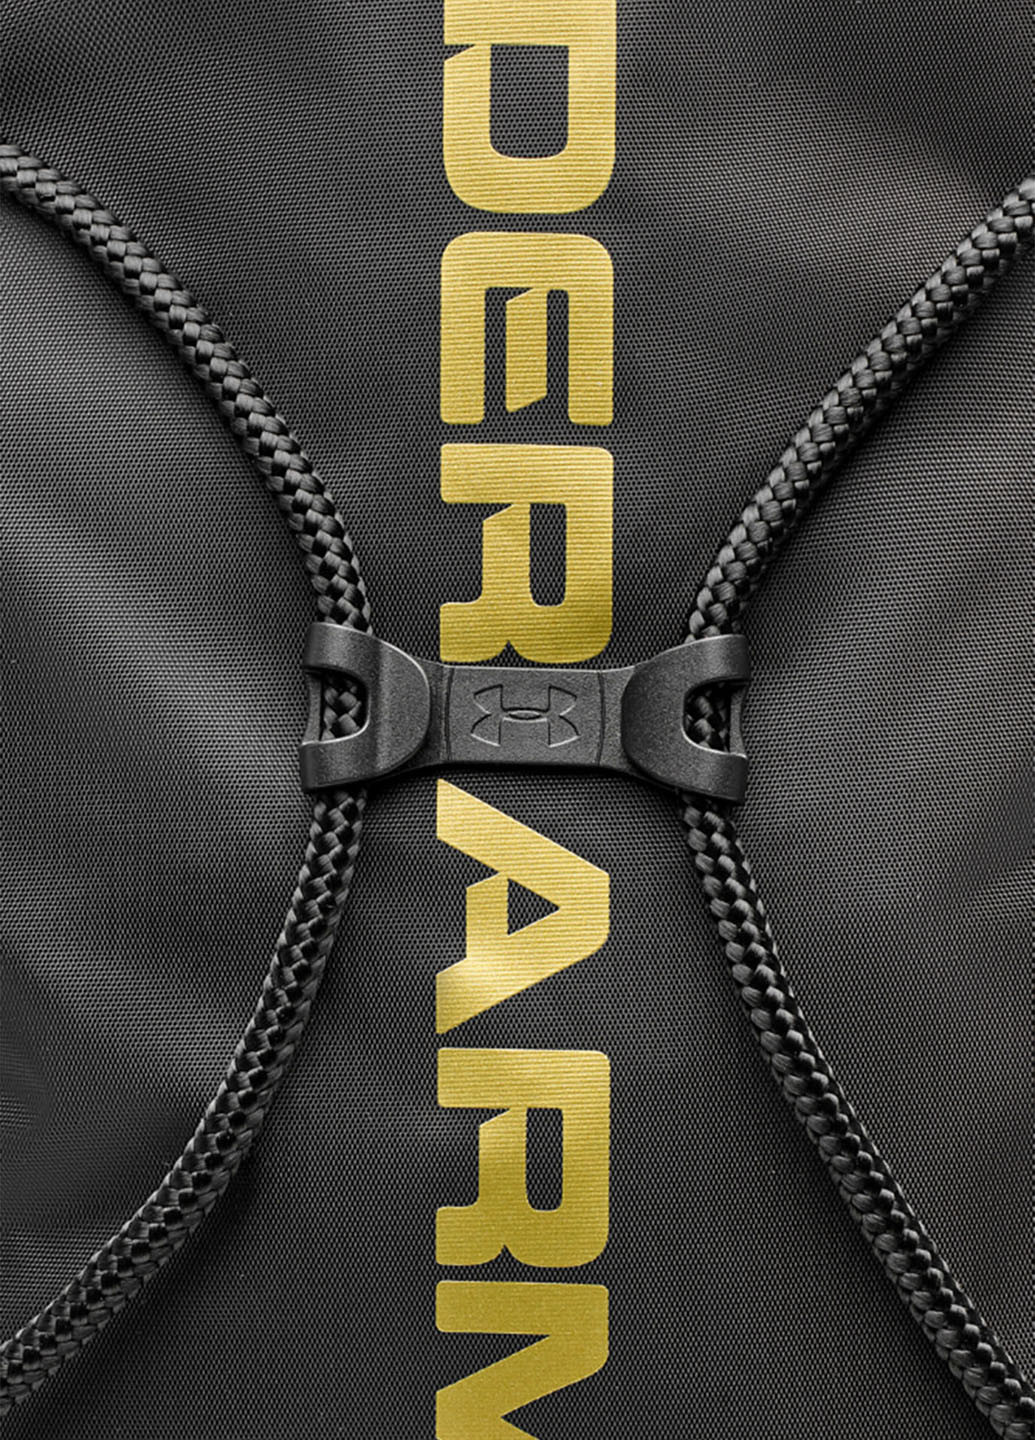 Рюкзак Under Armour логотип чёрный спортивный